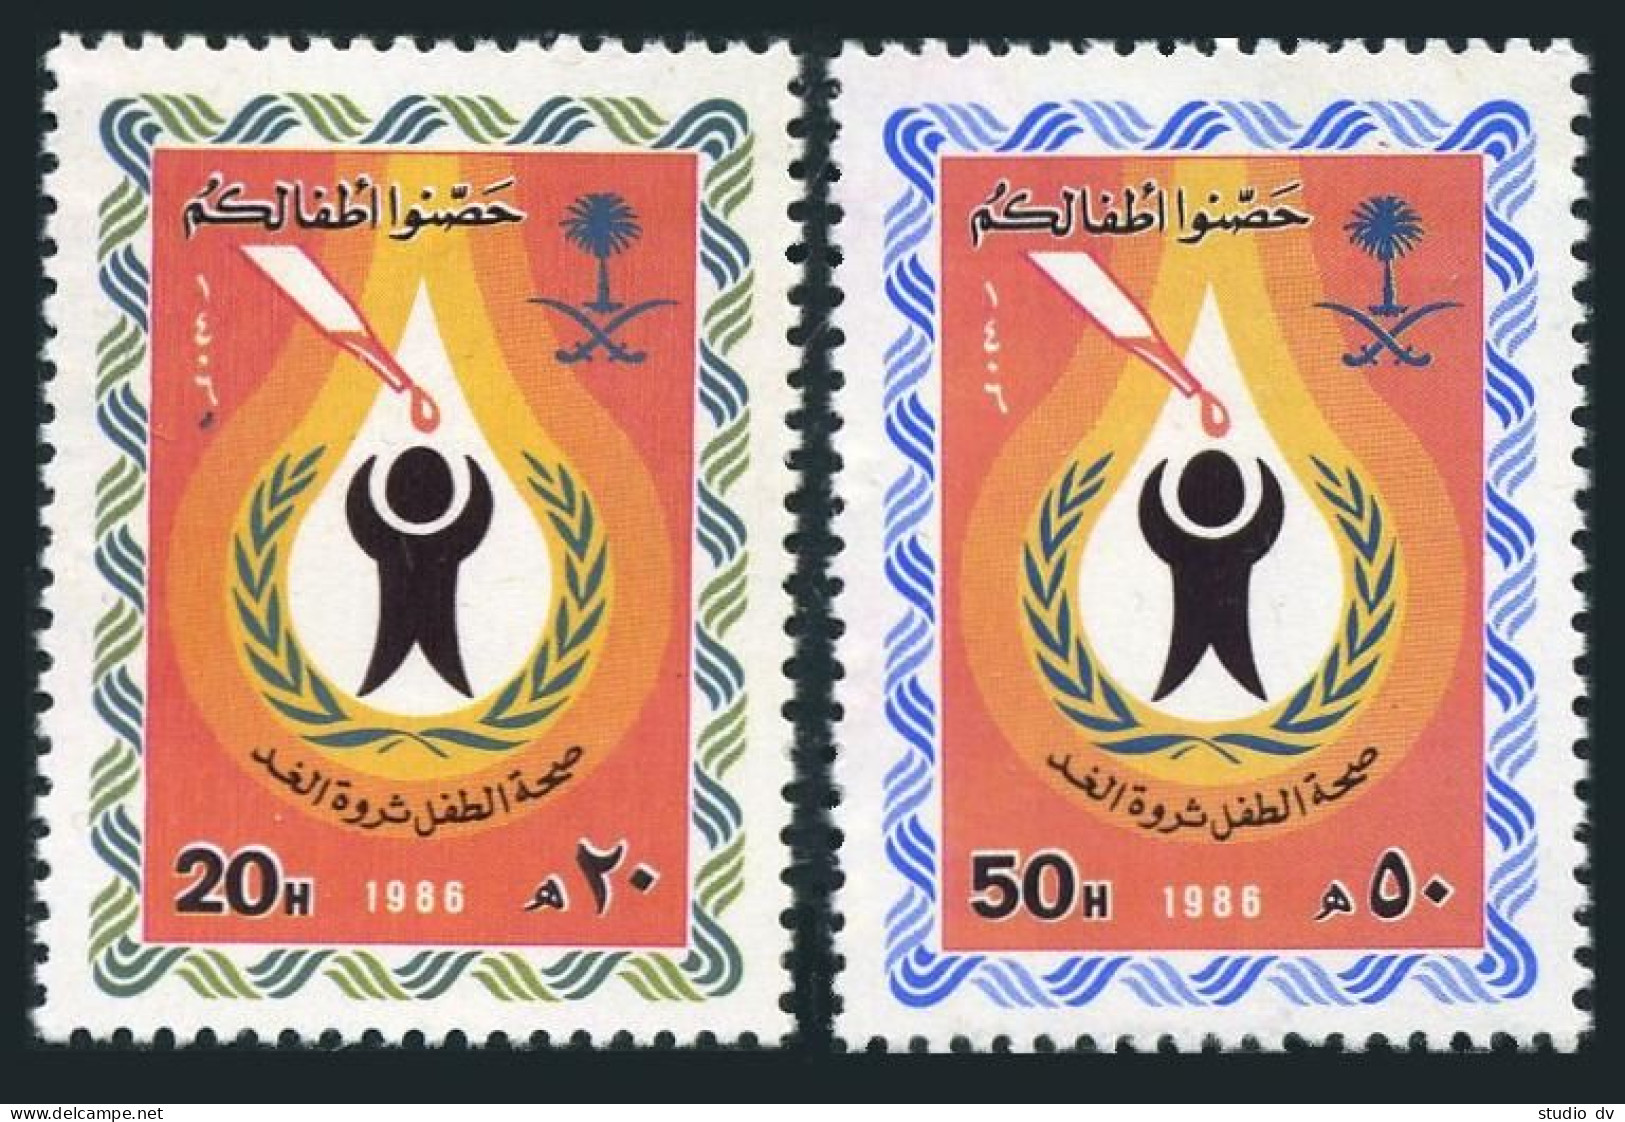 Saudi Arabia 974-975,MNH.Michel 837-838. UN Child Survival Campaign,1986. - Saoedi-Arabië